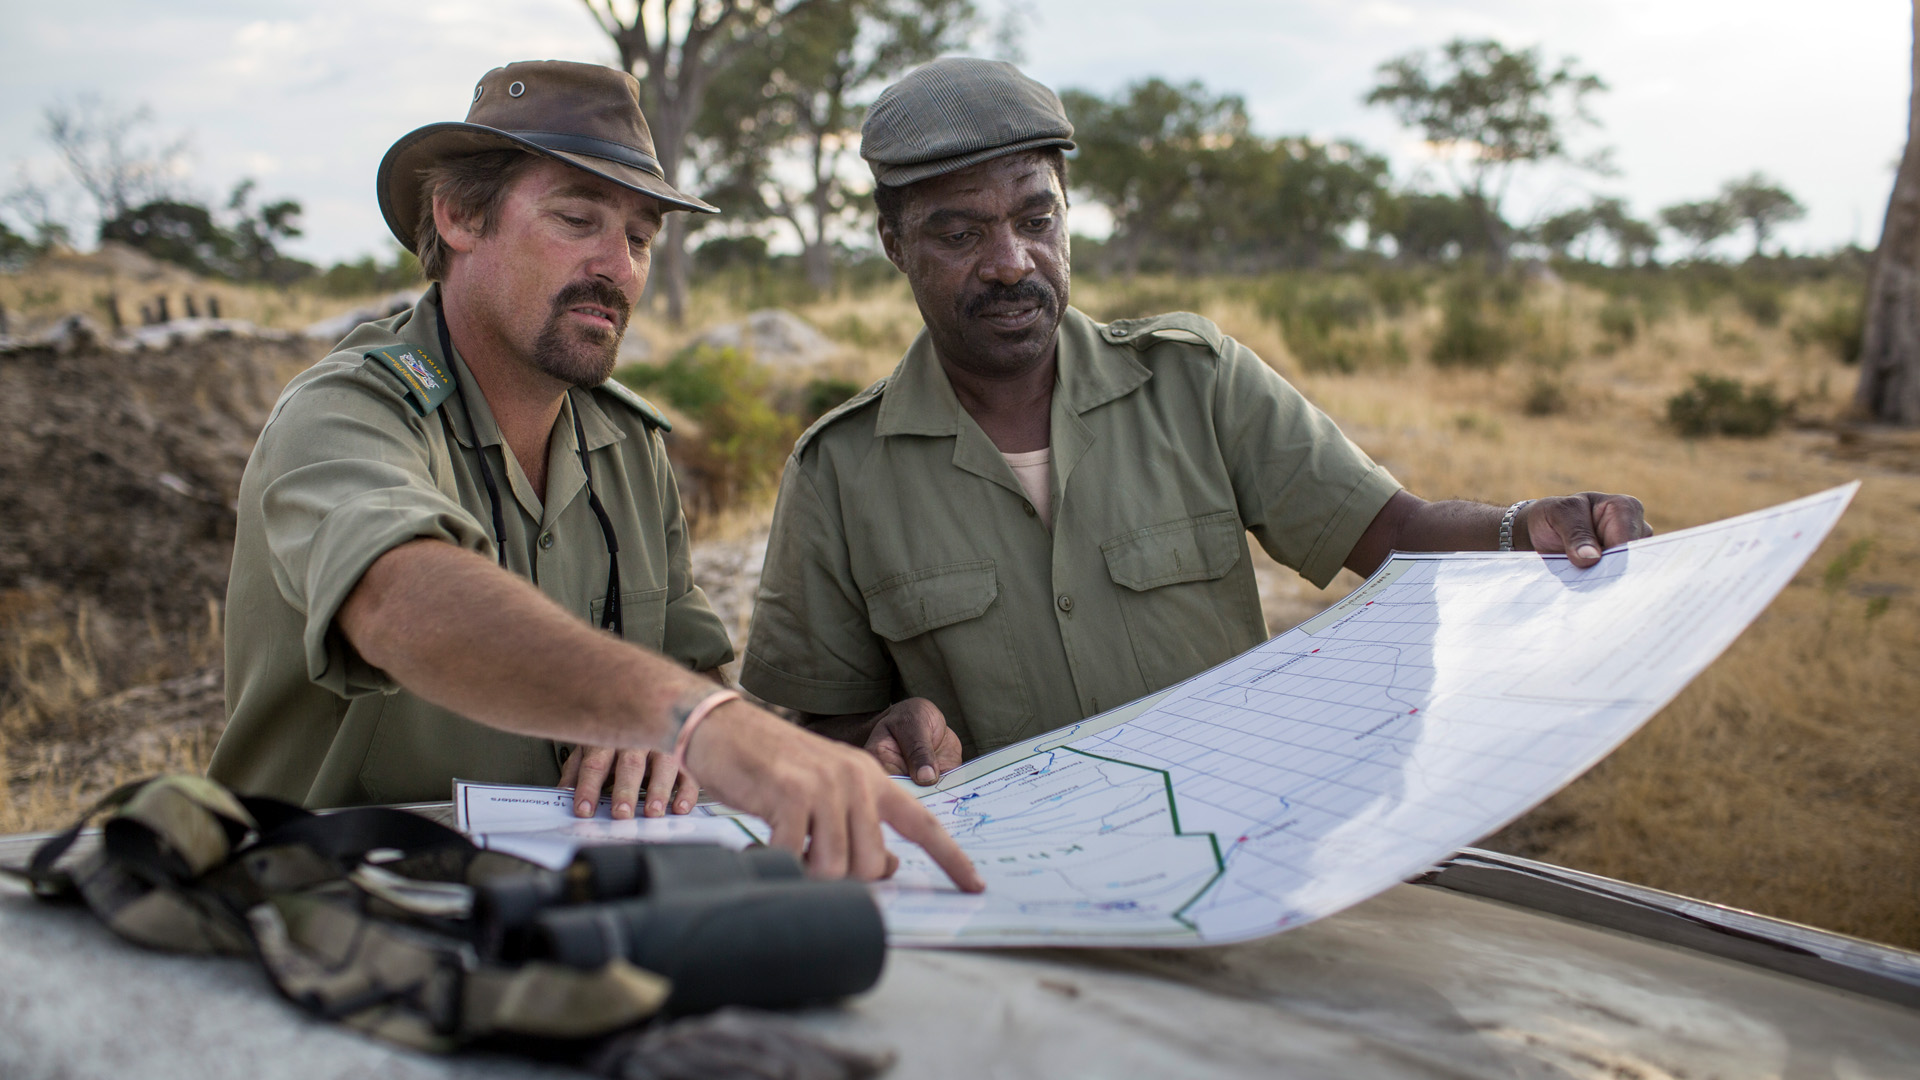 Ranger im namibischen Khaudum-Nationalpark, der Teil des grenzübergreifenden KAZA-Projekts ist